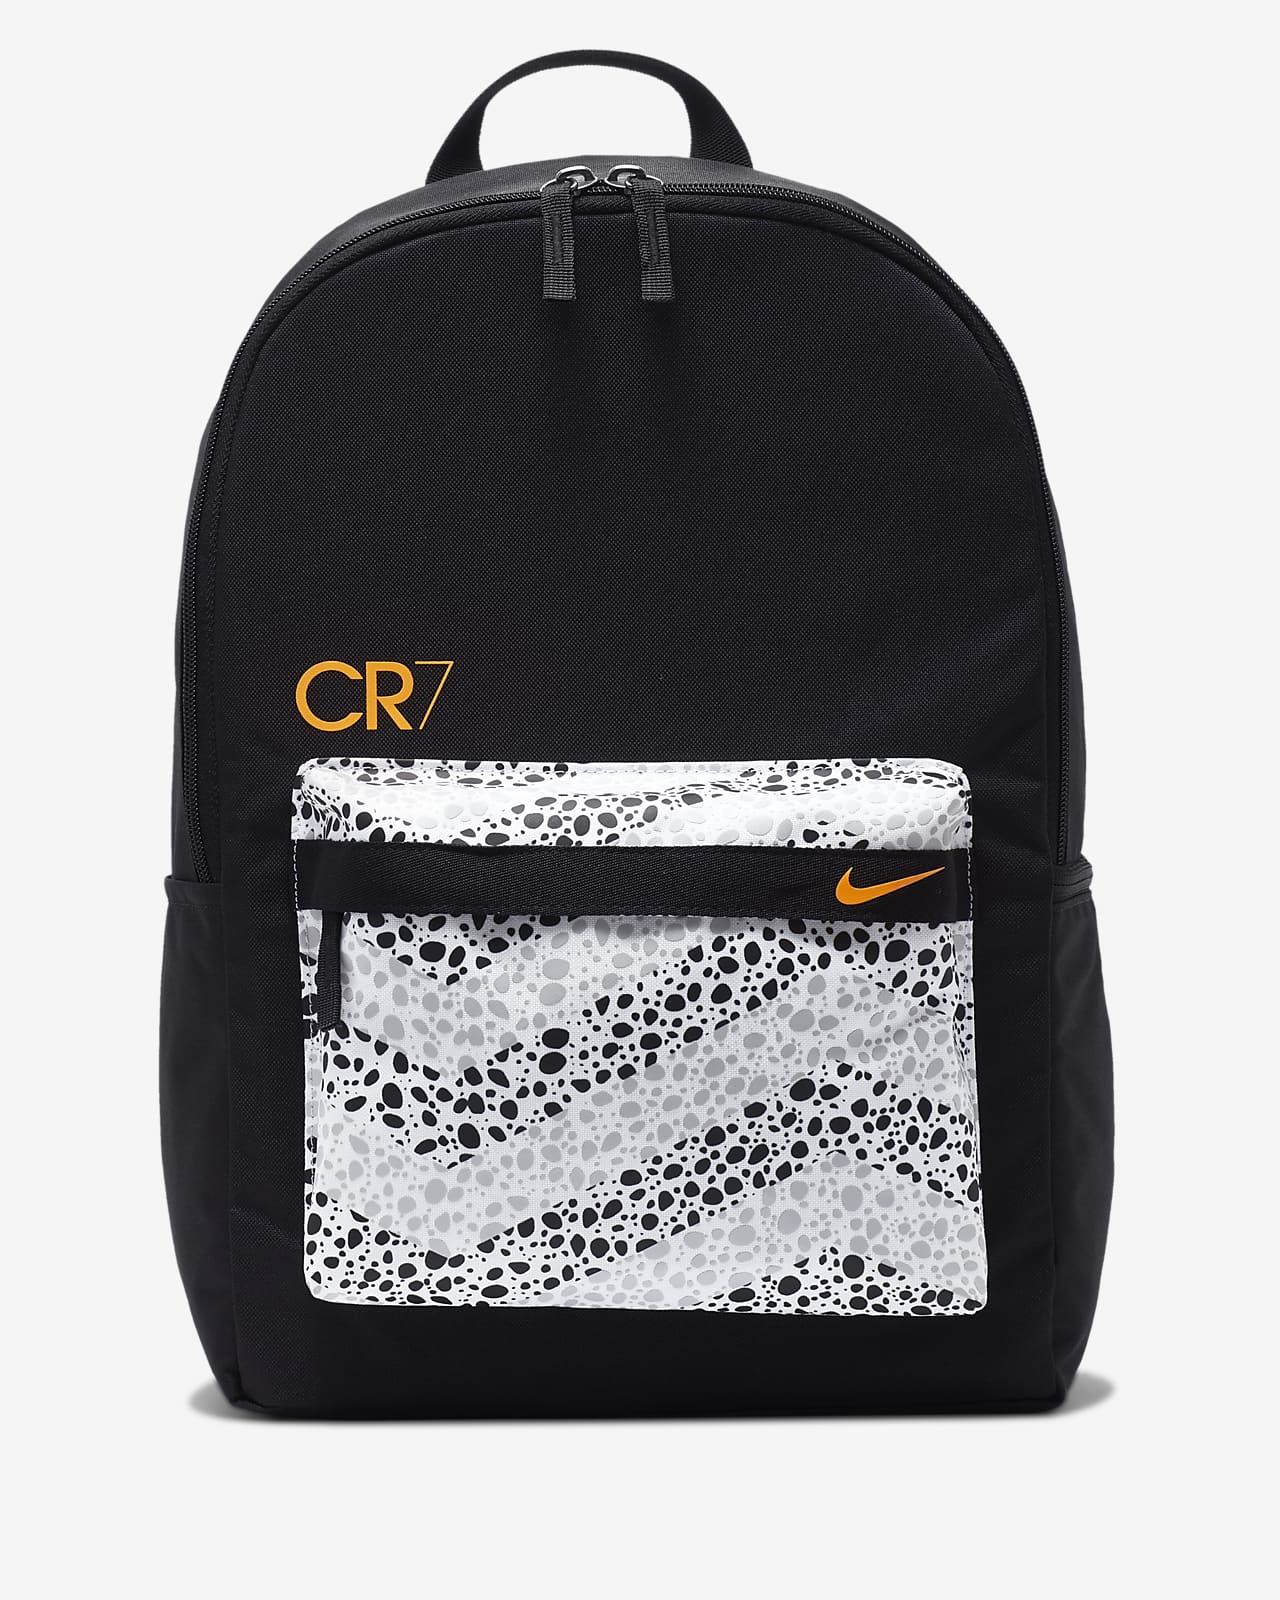 CR7 Kids' Football Backpack. Nike ZA